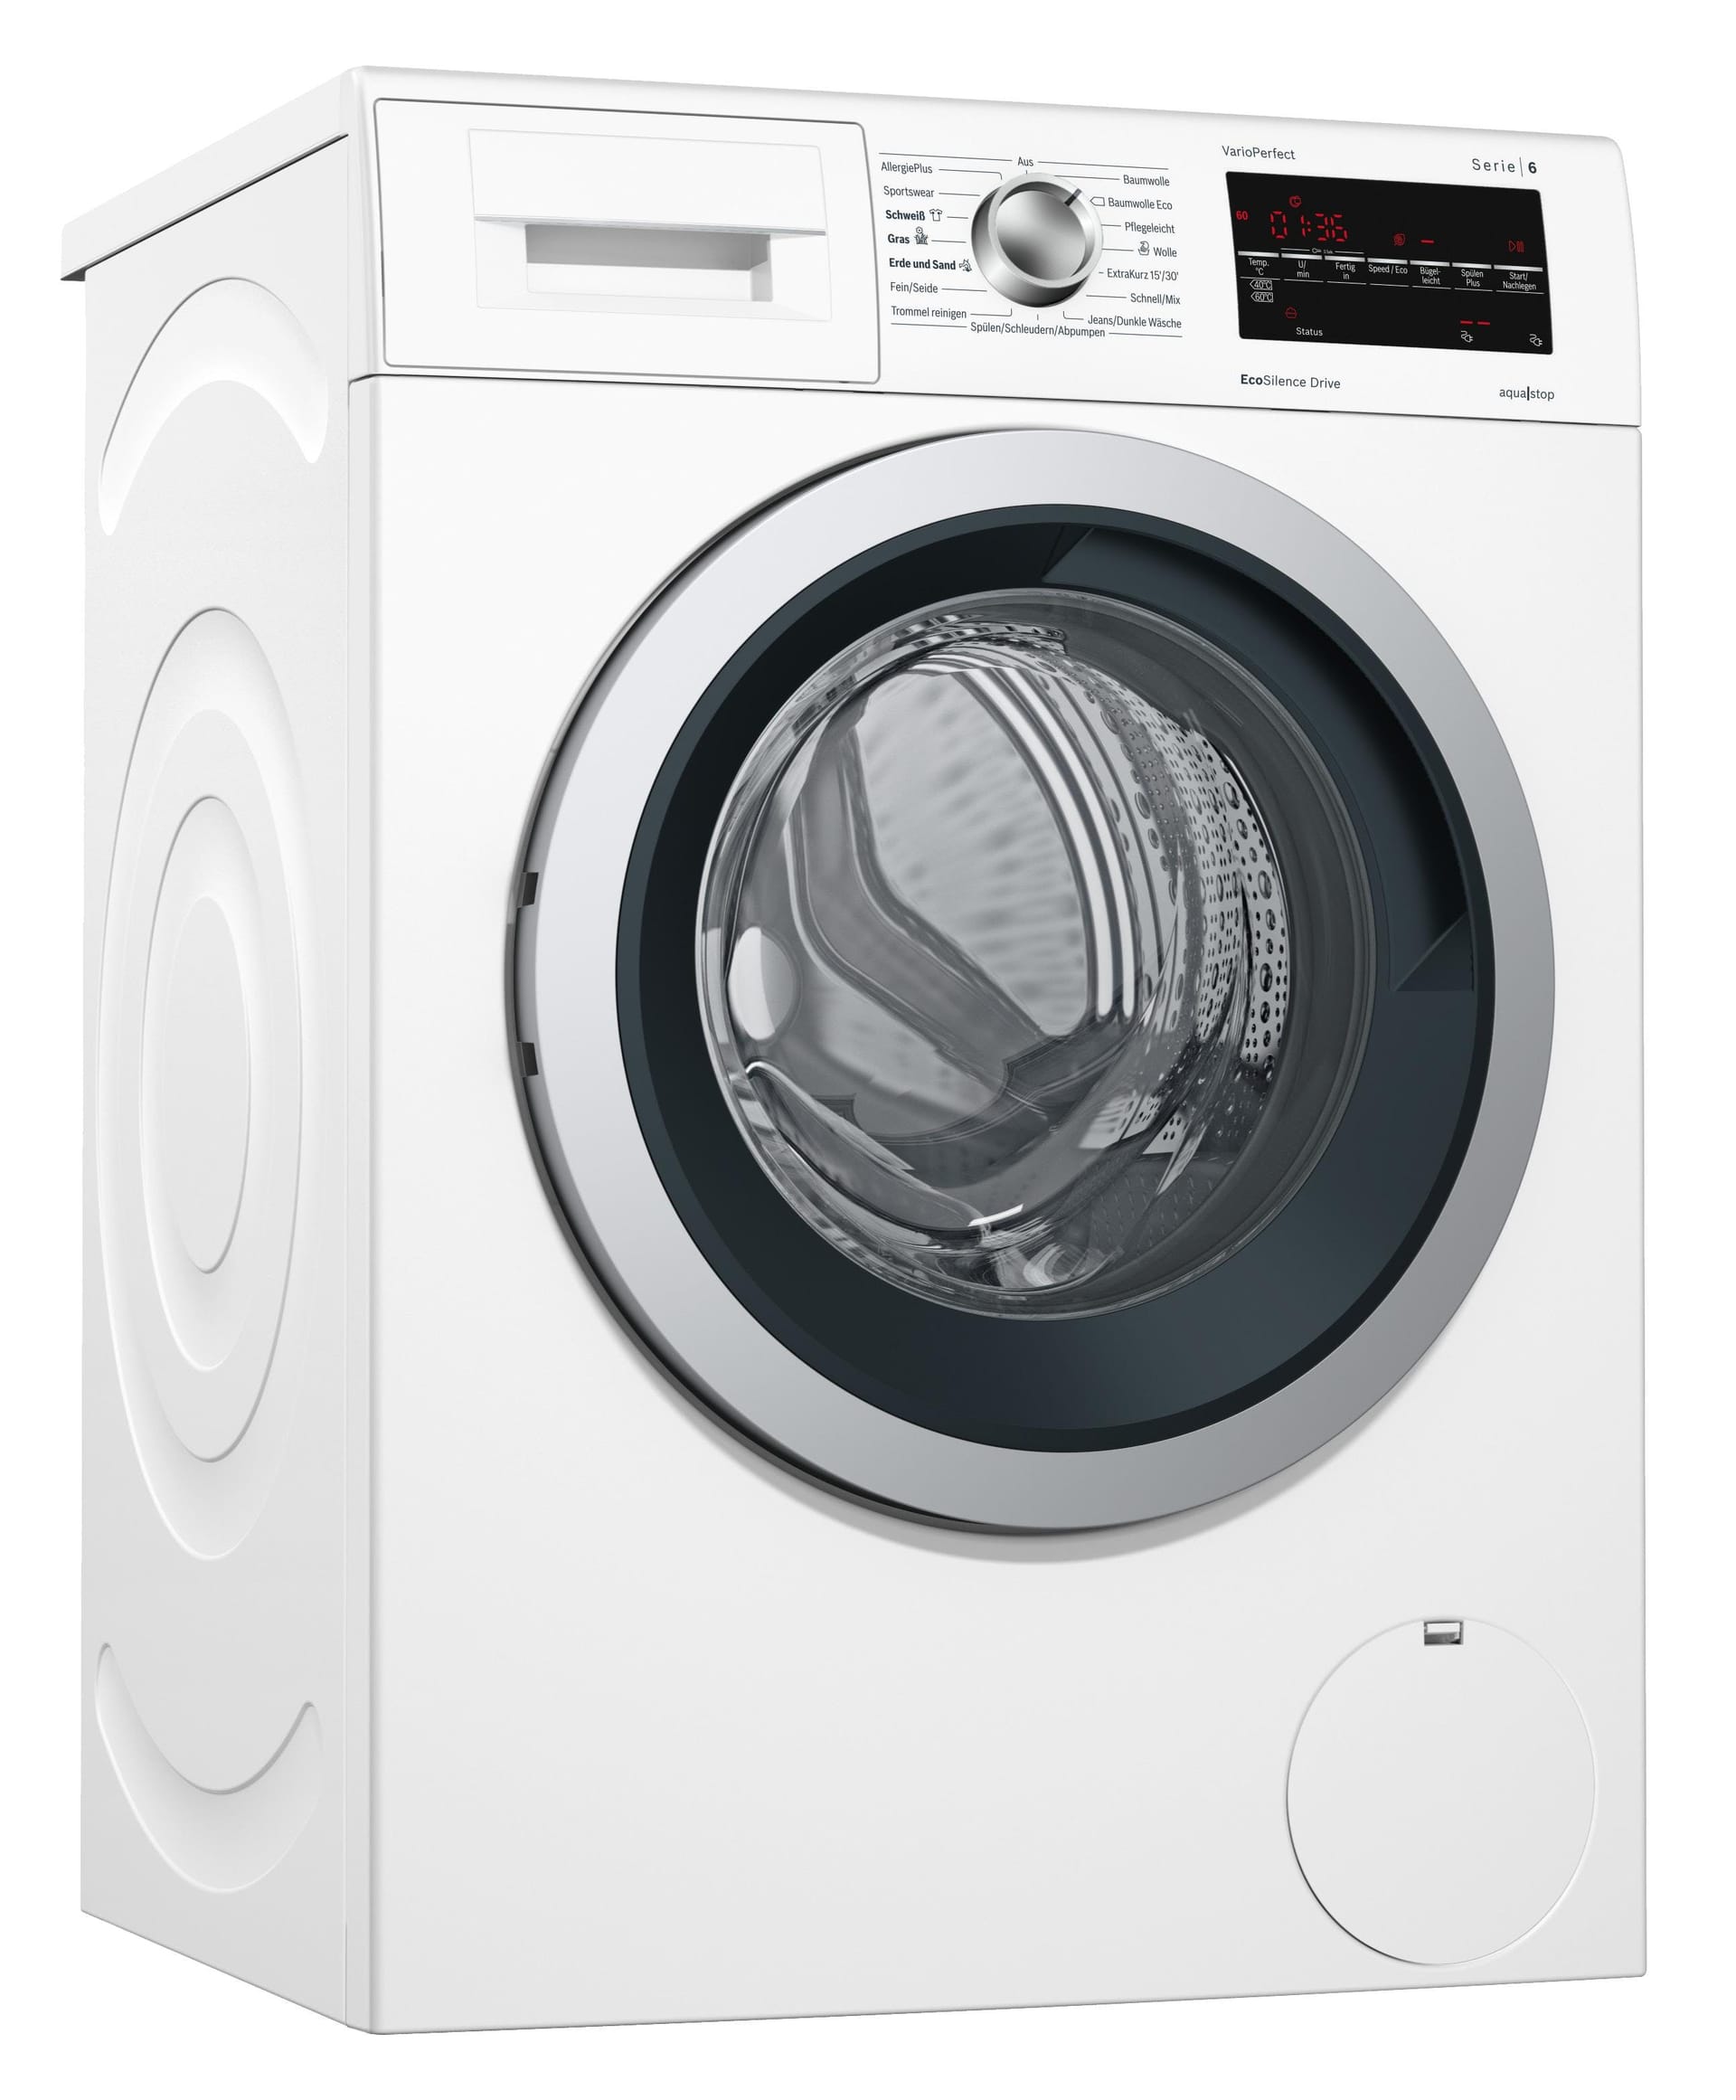 Siemens Waschmaschine: Aufgrund einer Verletzungsgefahr wird das Gerät zurückgerufen.